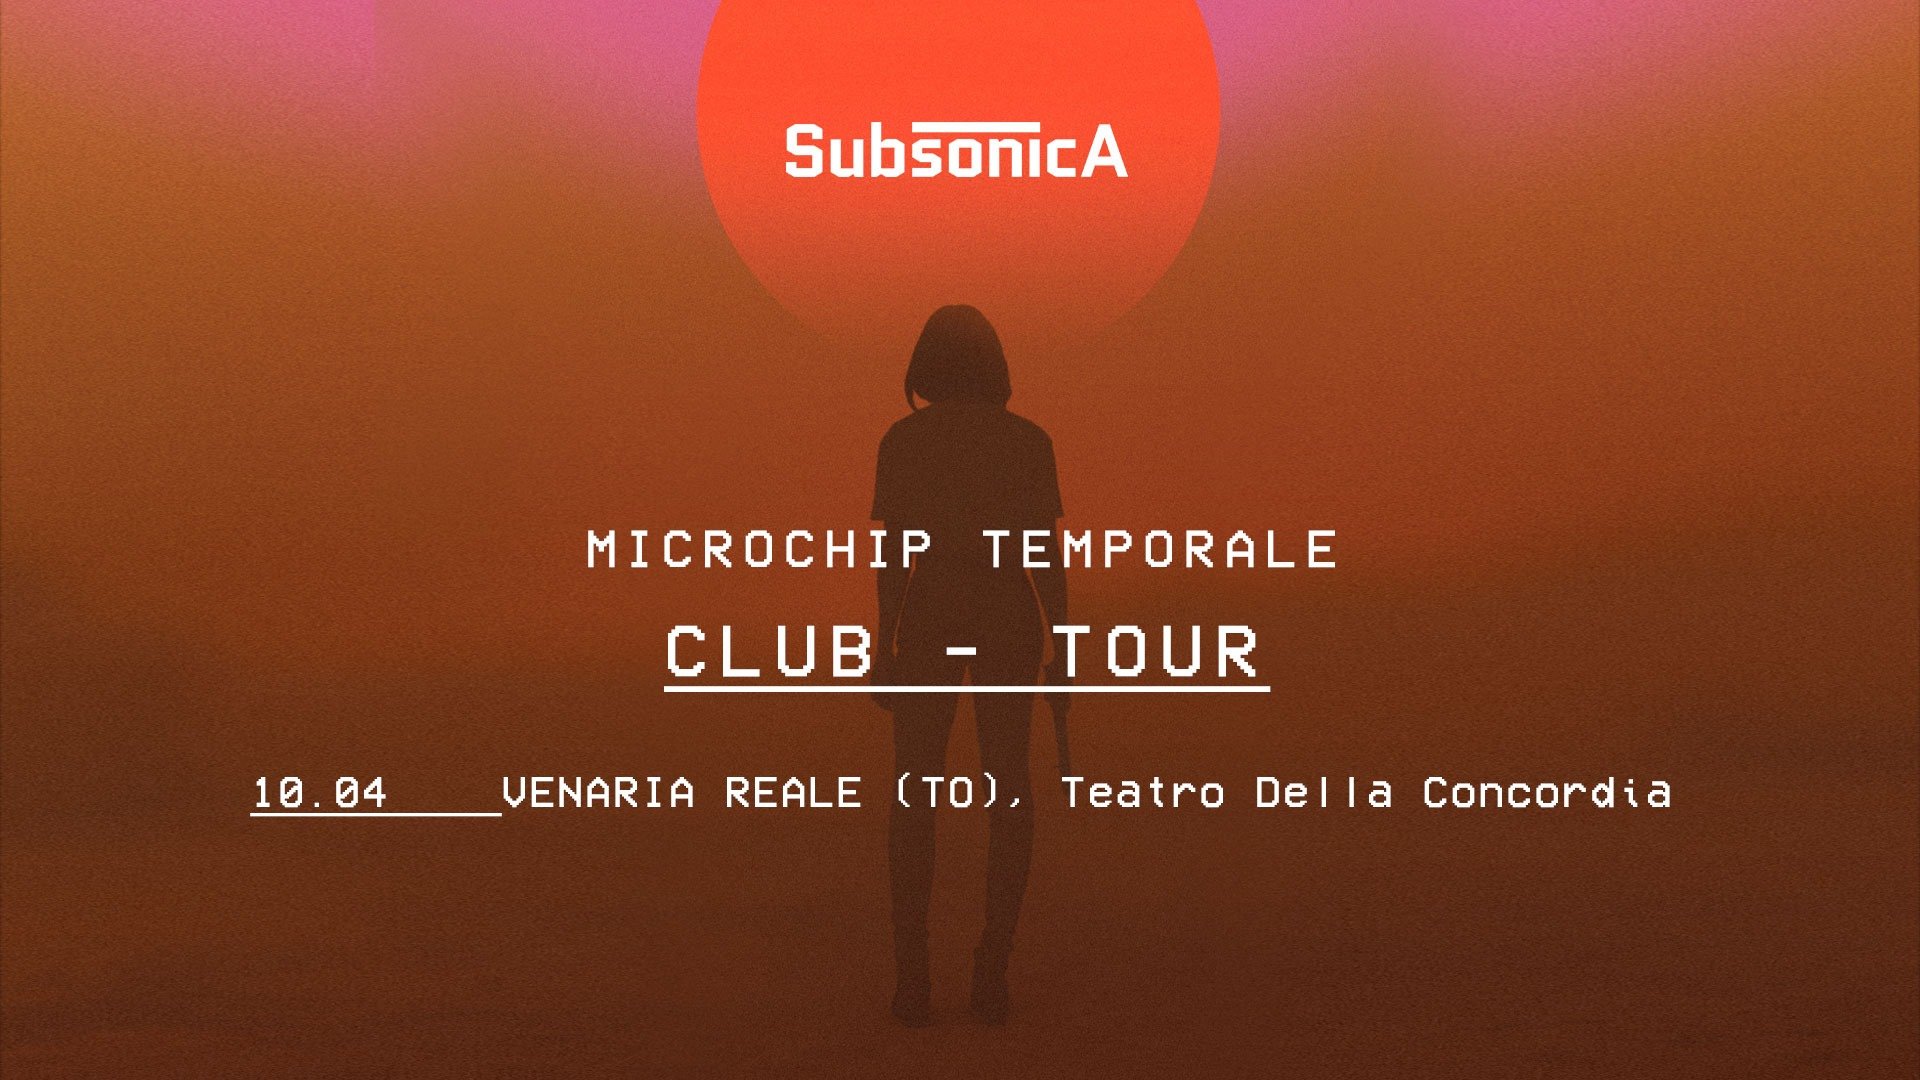 Teatro Concordia Venaria Reale - Torino, Subsonica, Microchip Temporale secondo concerto